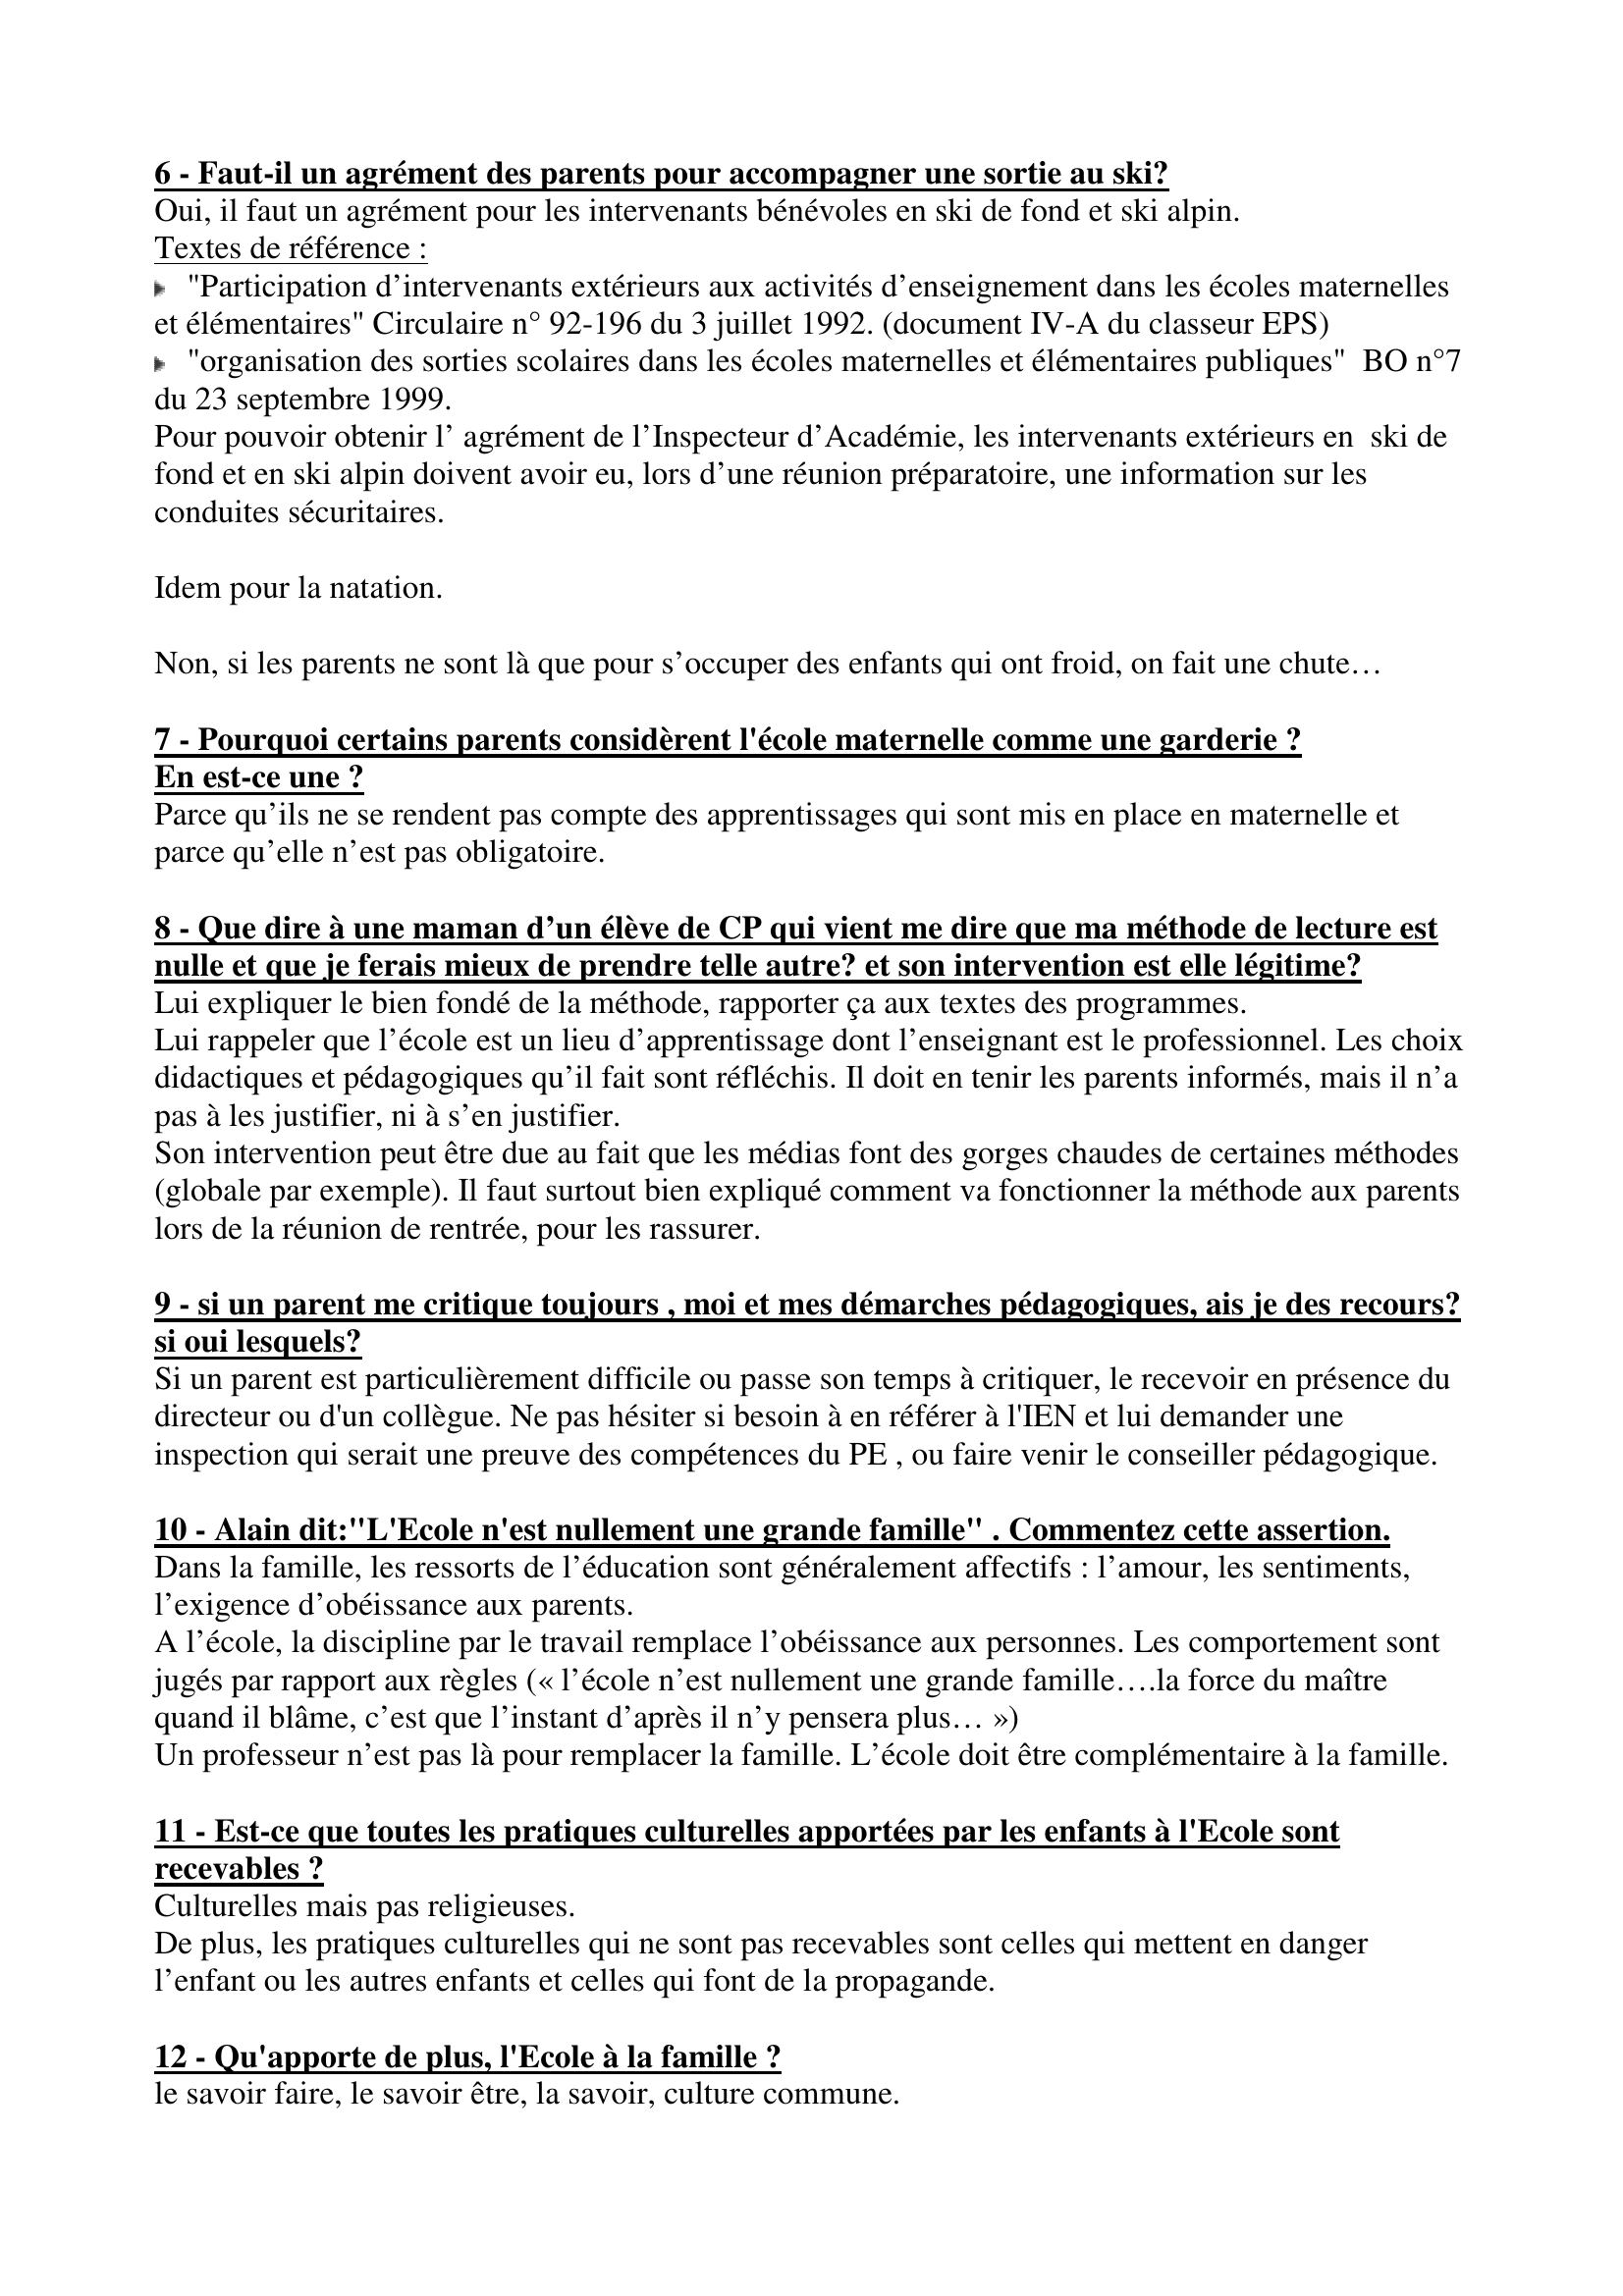 Prévisualisation du document REPONSES OP RELATIONS FAMILLE/ECOLE

Synthèse sous forme de questions réponses construite par Sylvain
sylvain.